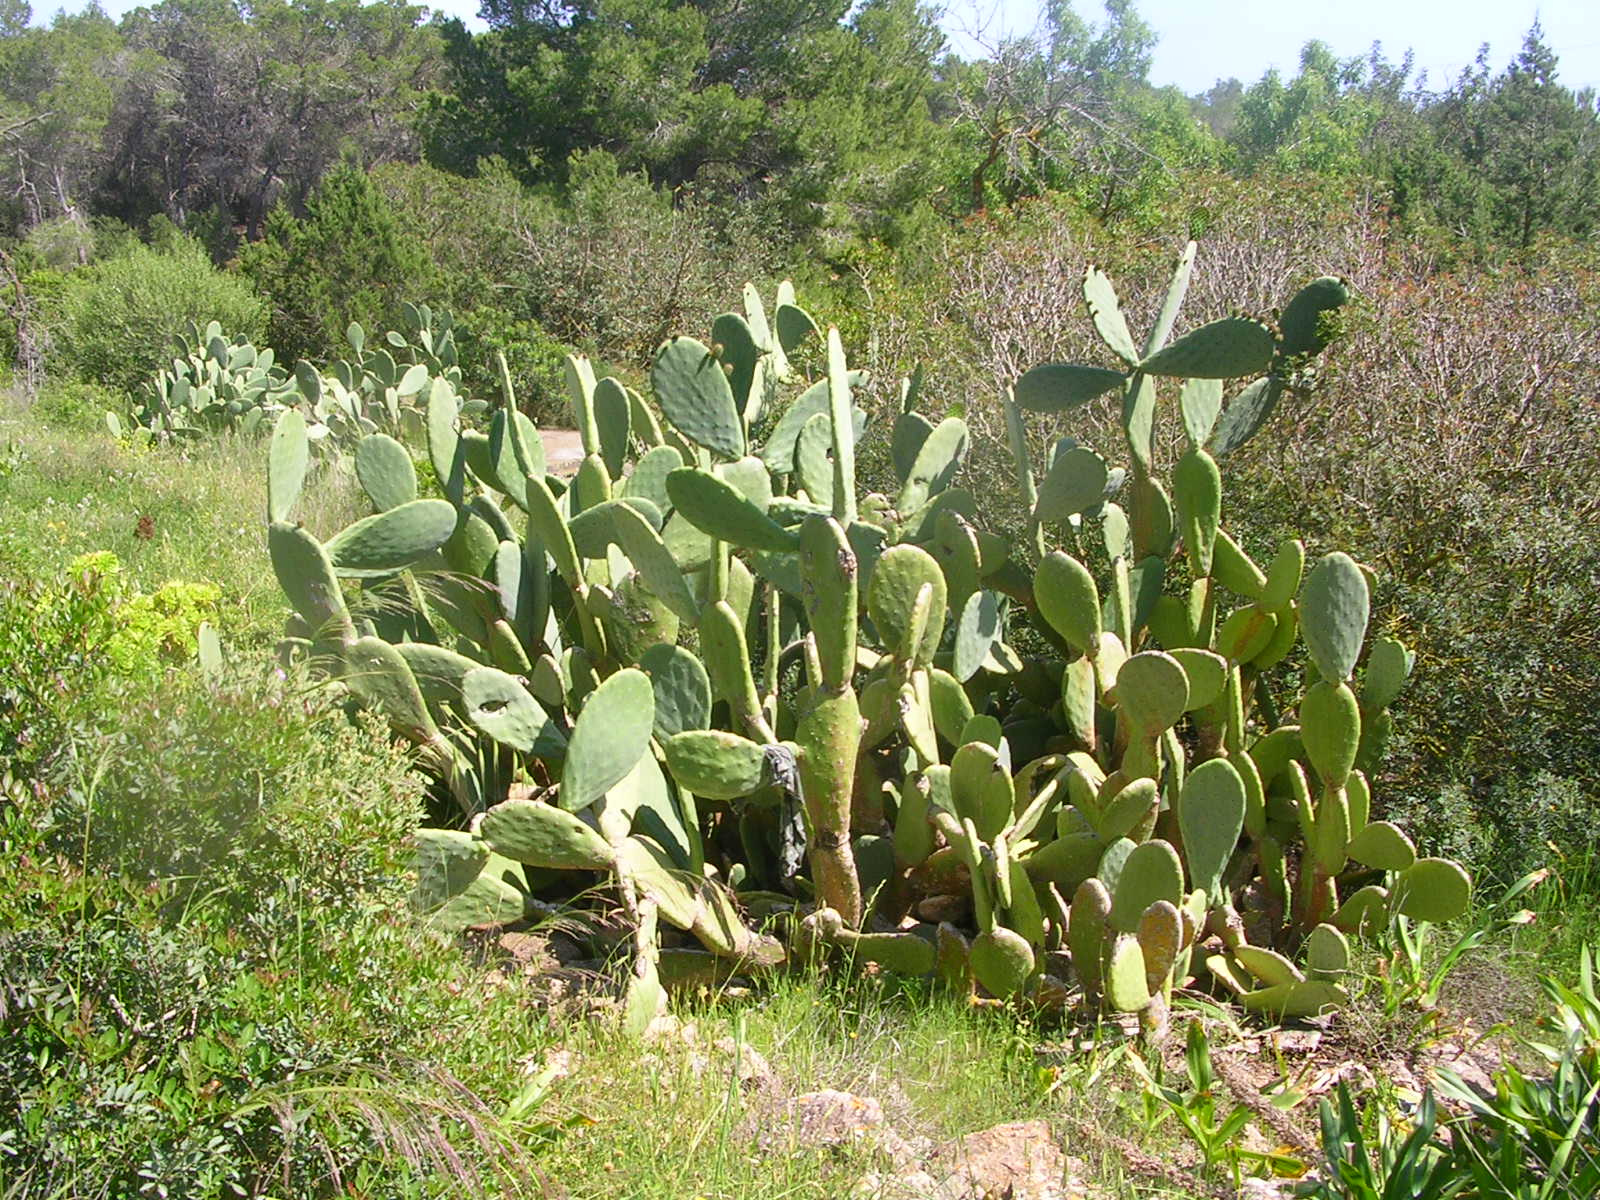 sok nagy kaktusz